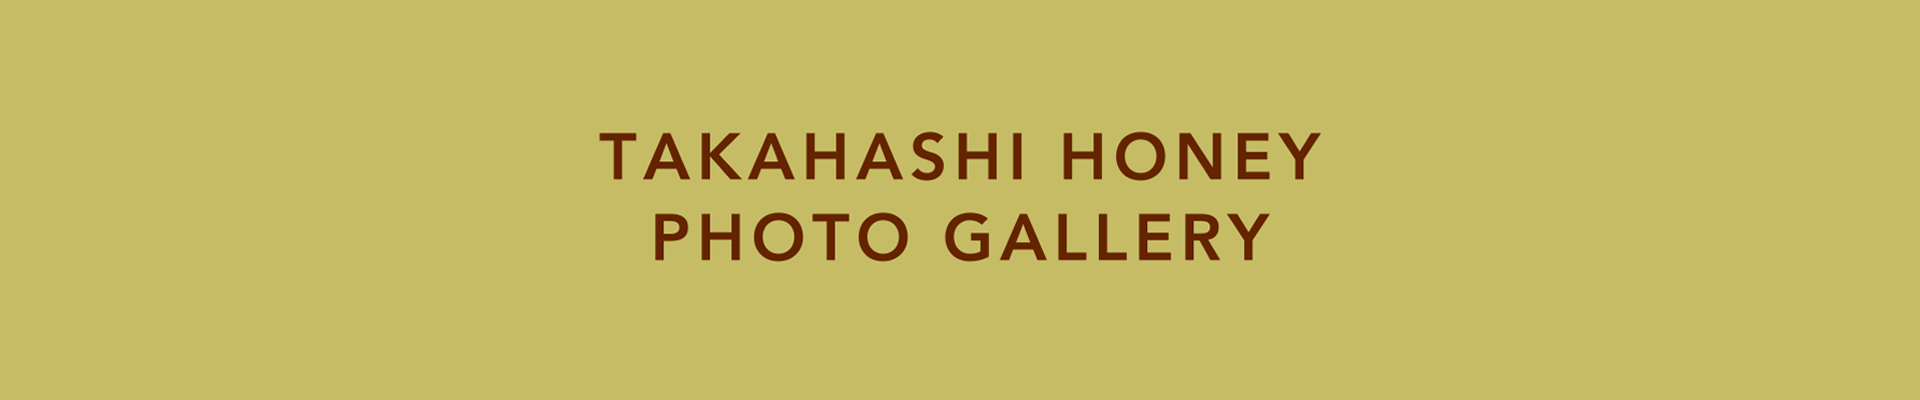 TAKAHASHI HONEY PHOTO GALLERY